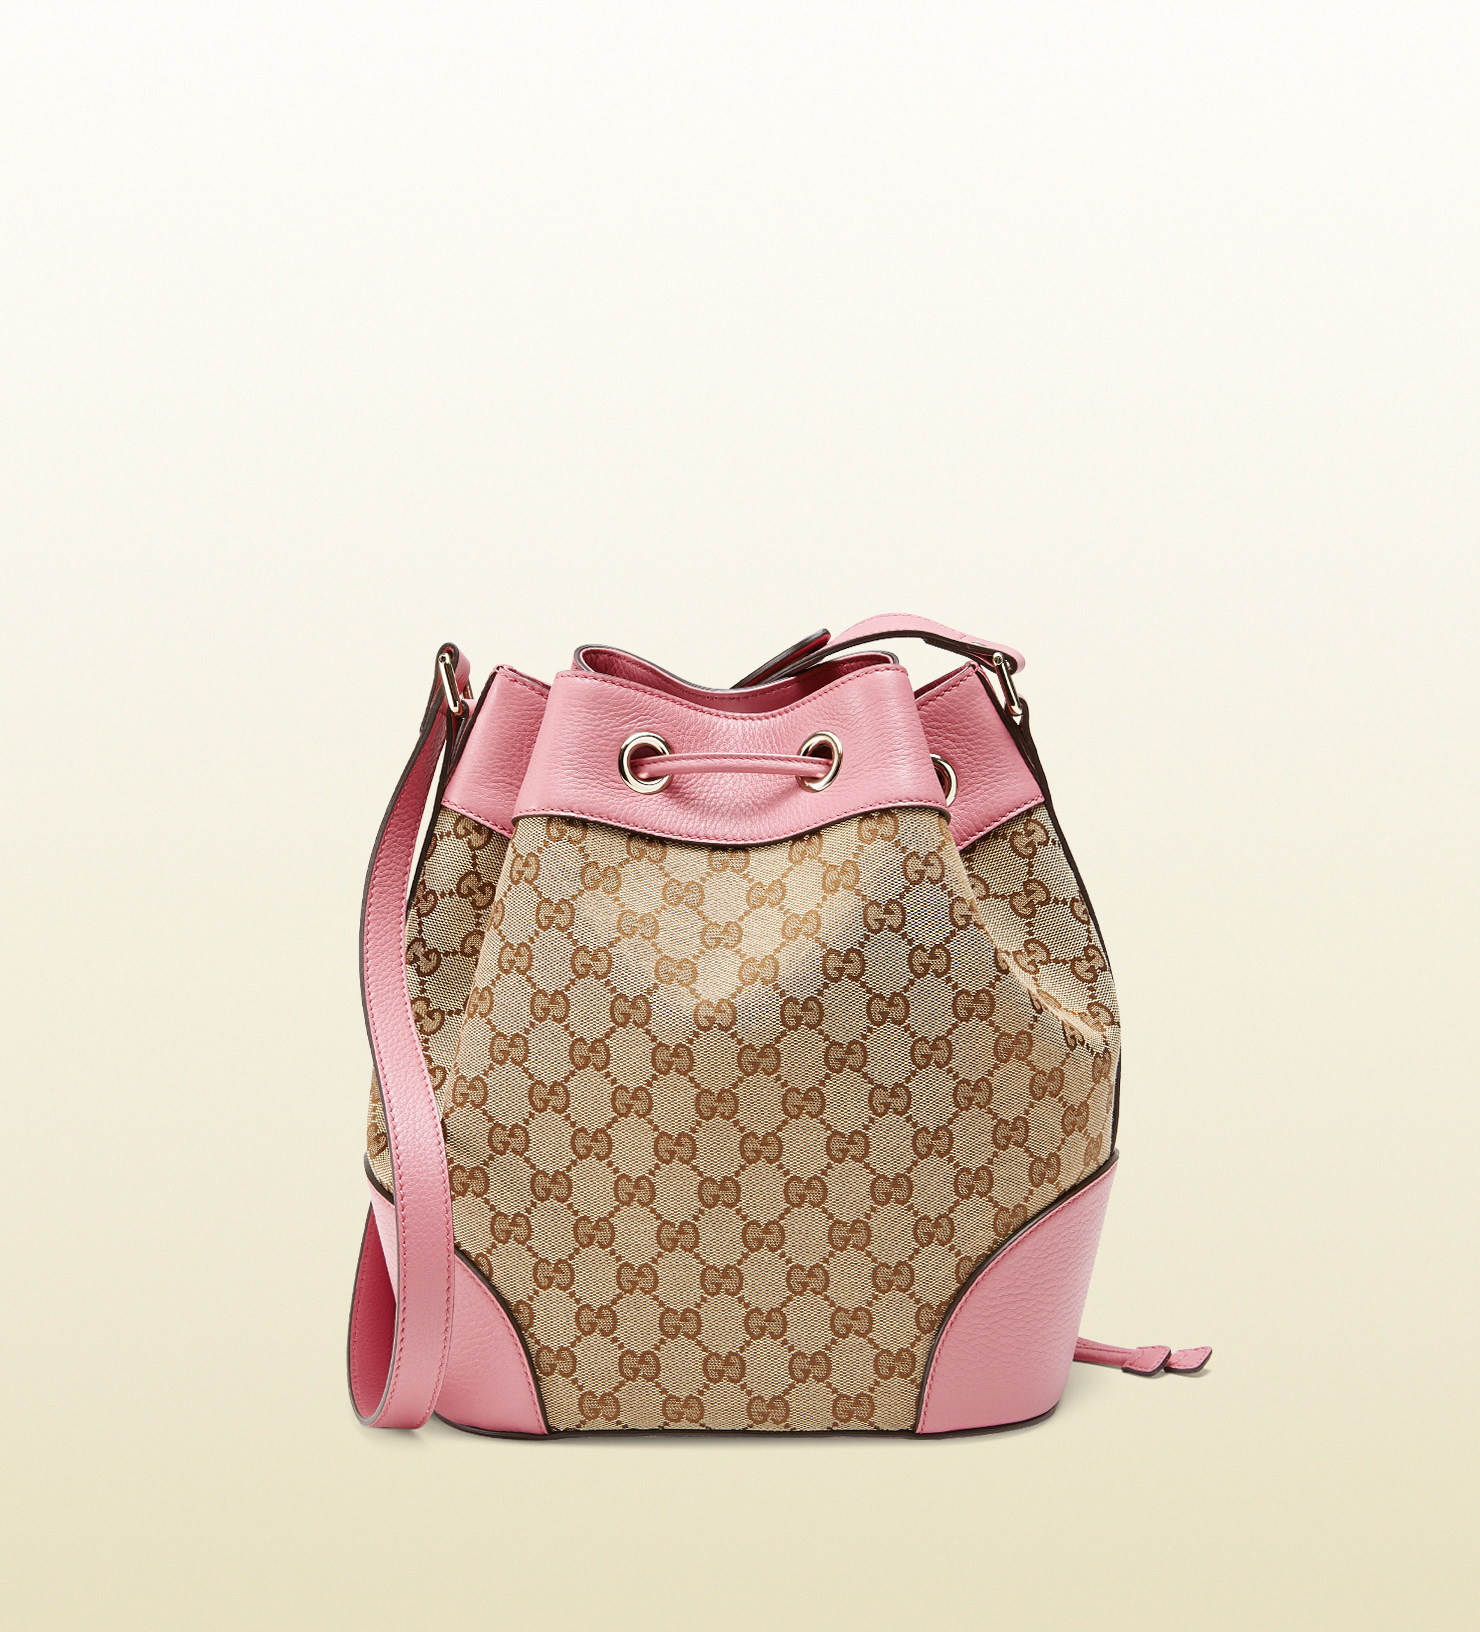 Gucci Original Gg Canvas Bucket Bag in Beige (Pink) - Lyst